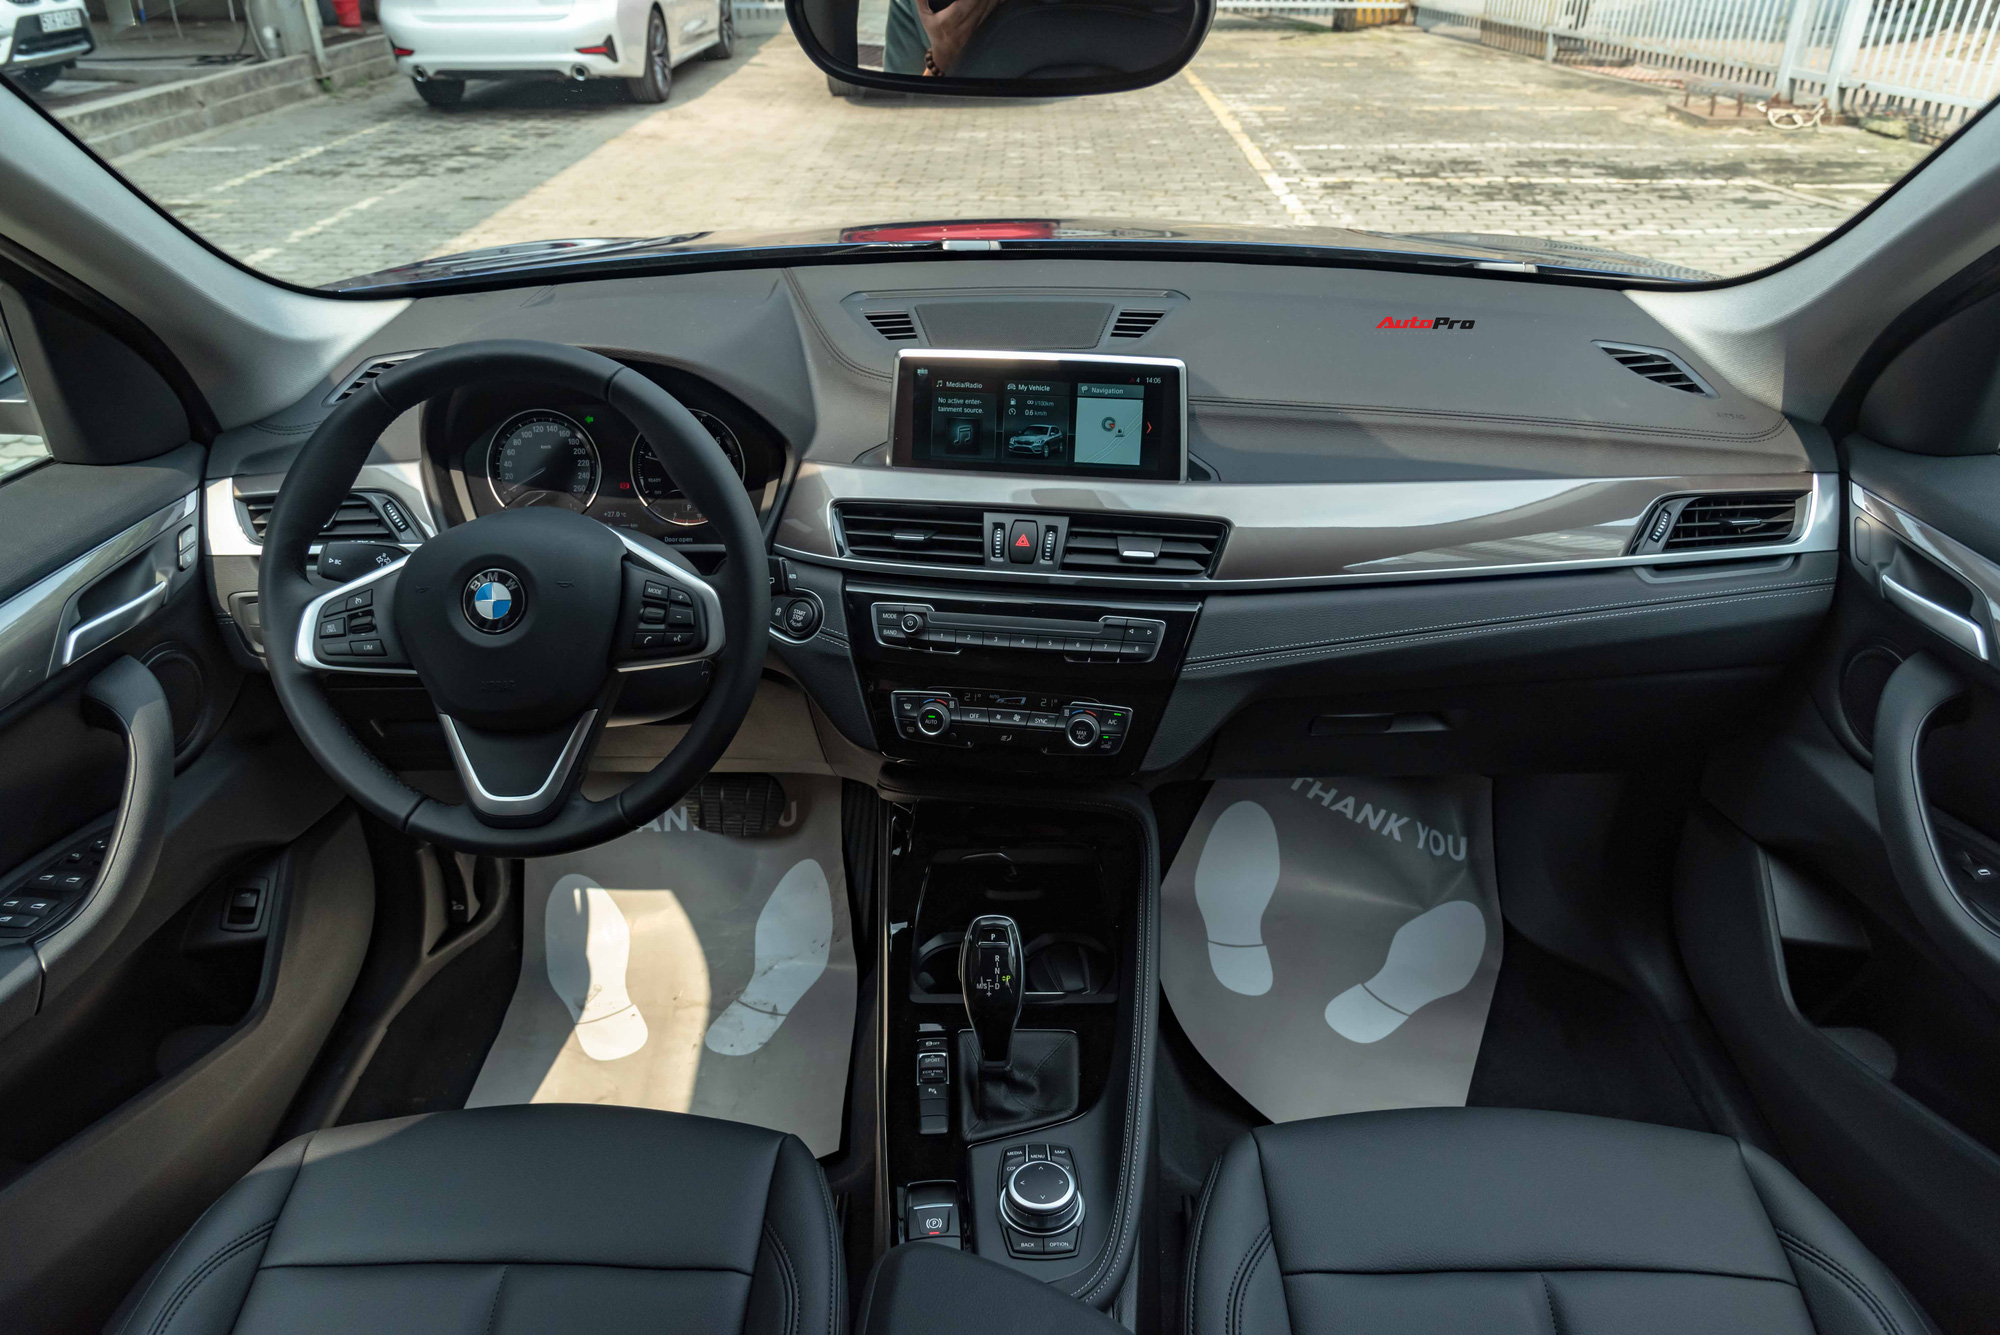 Chi tiết BMW X1 2020 giá 1,859 tỷ đồng tại Việt Nam - đe doạ Mercedes-Benz GLA và Audi Q3 - Ảnh 5.